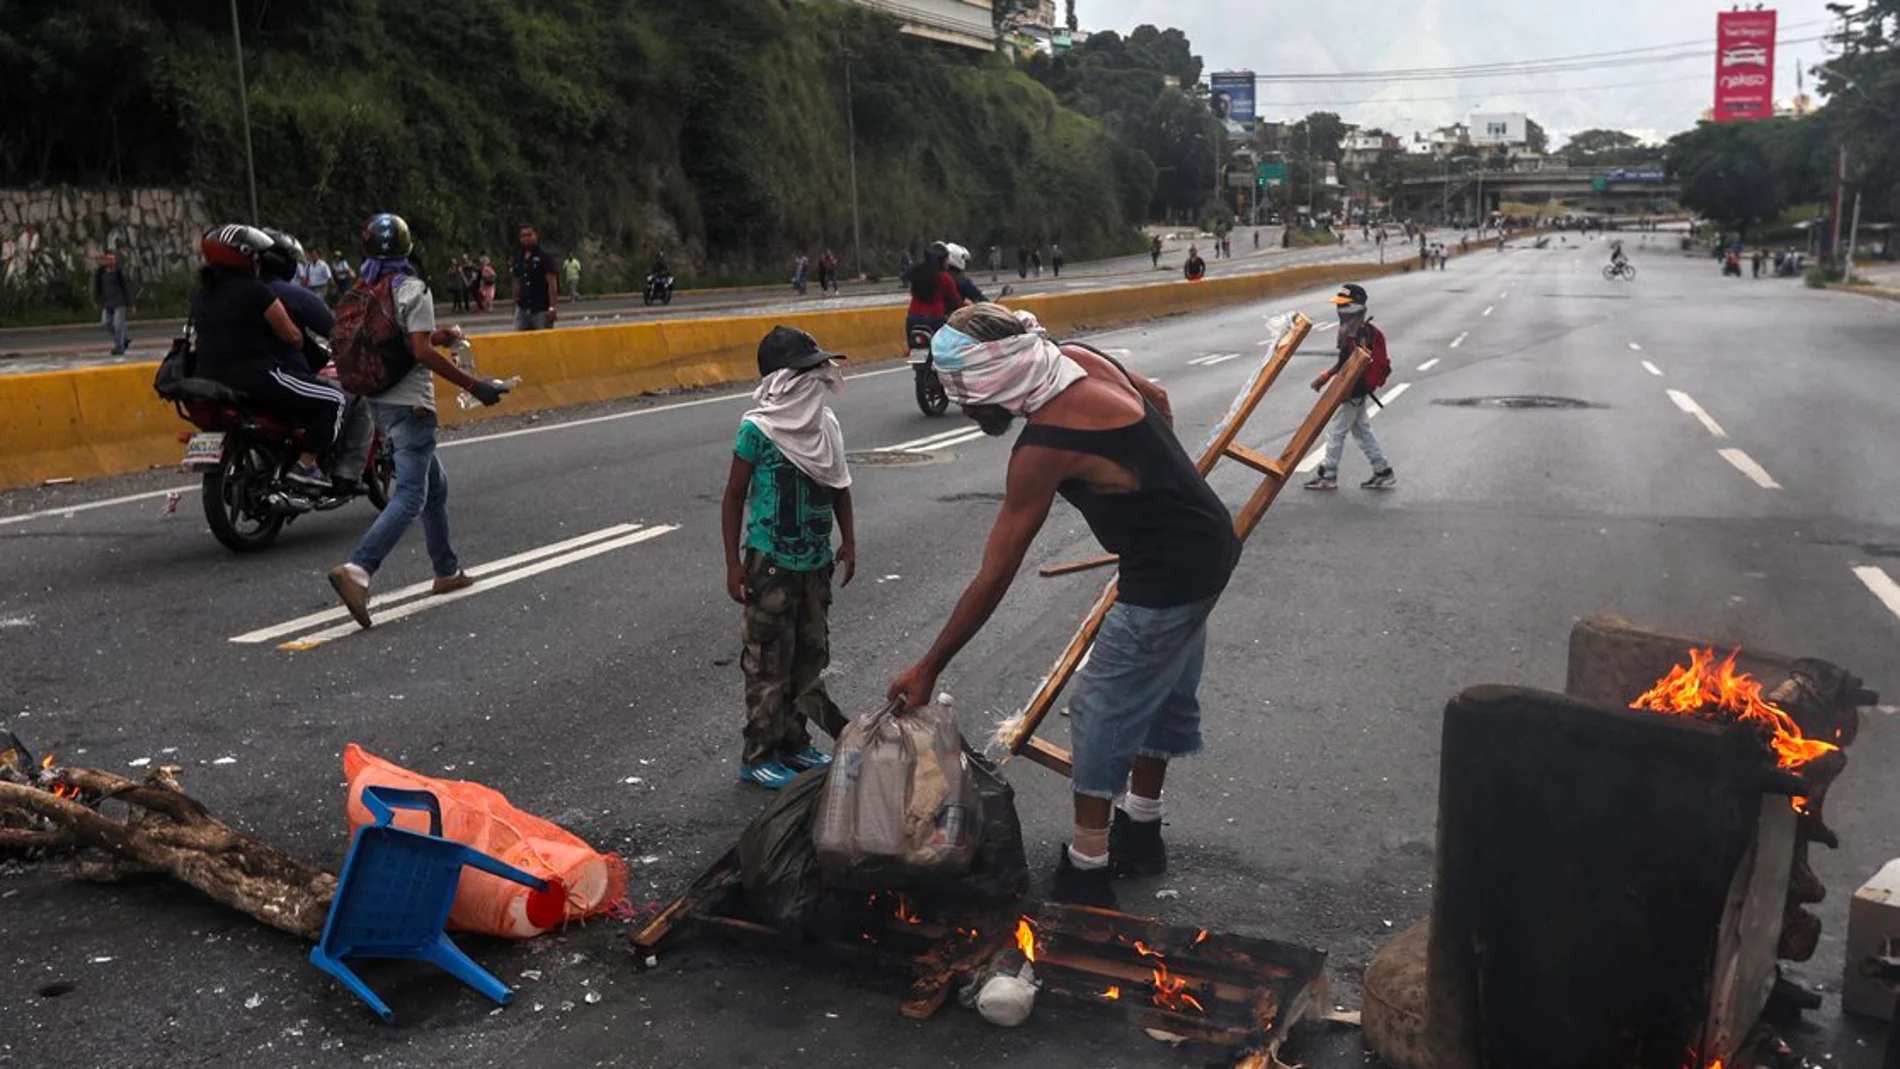 Protestas contra Nicolás Maduro